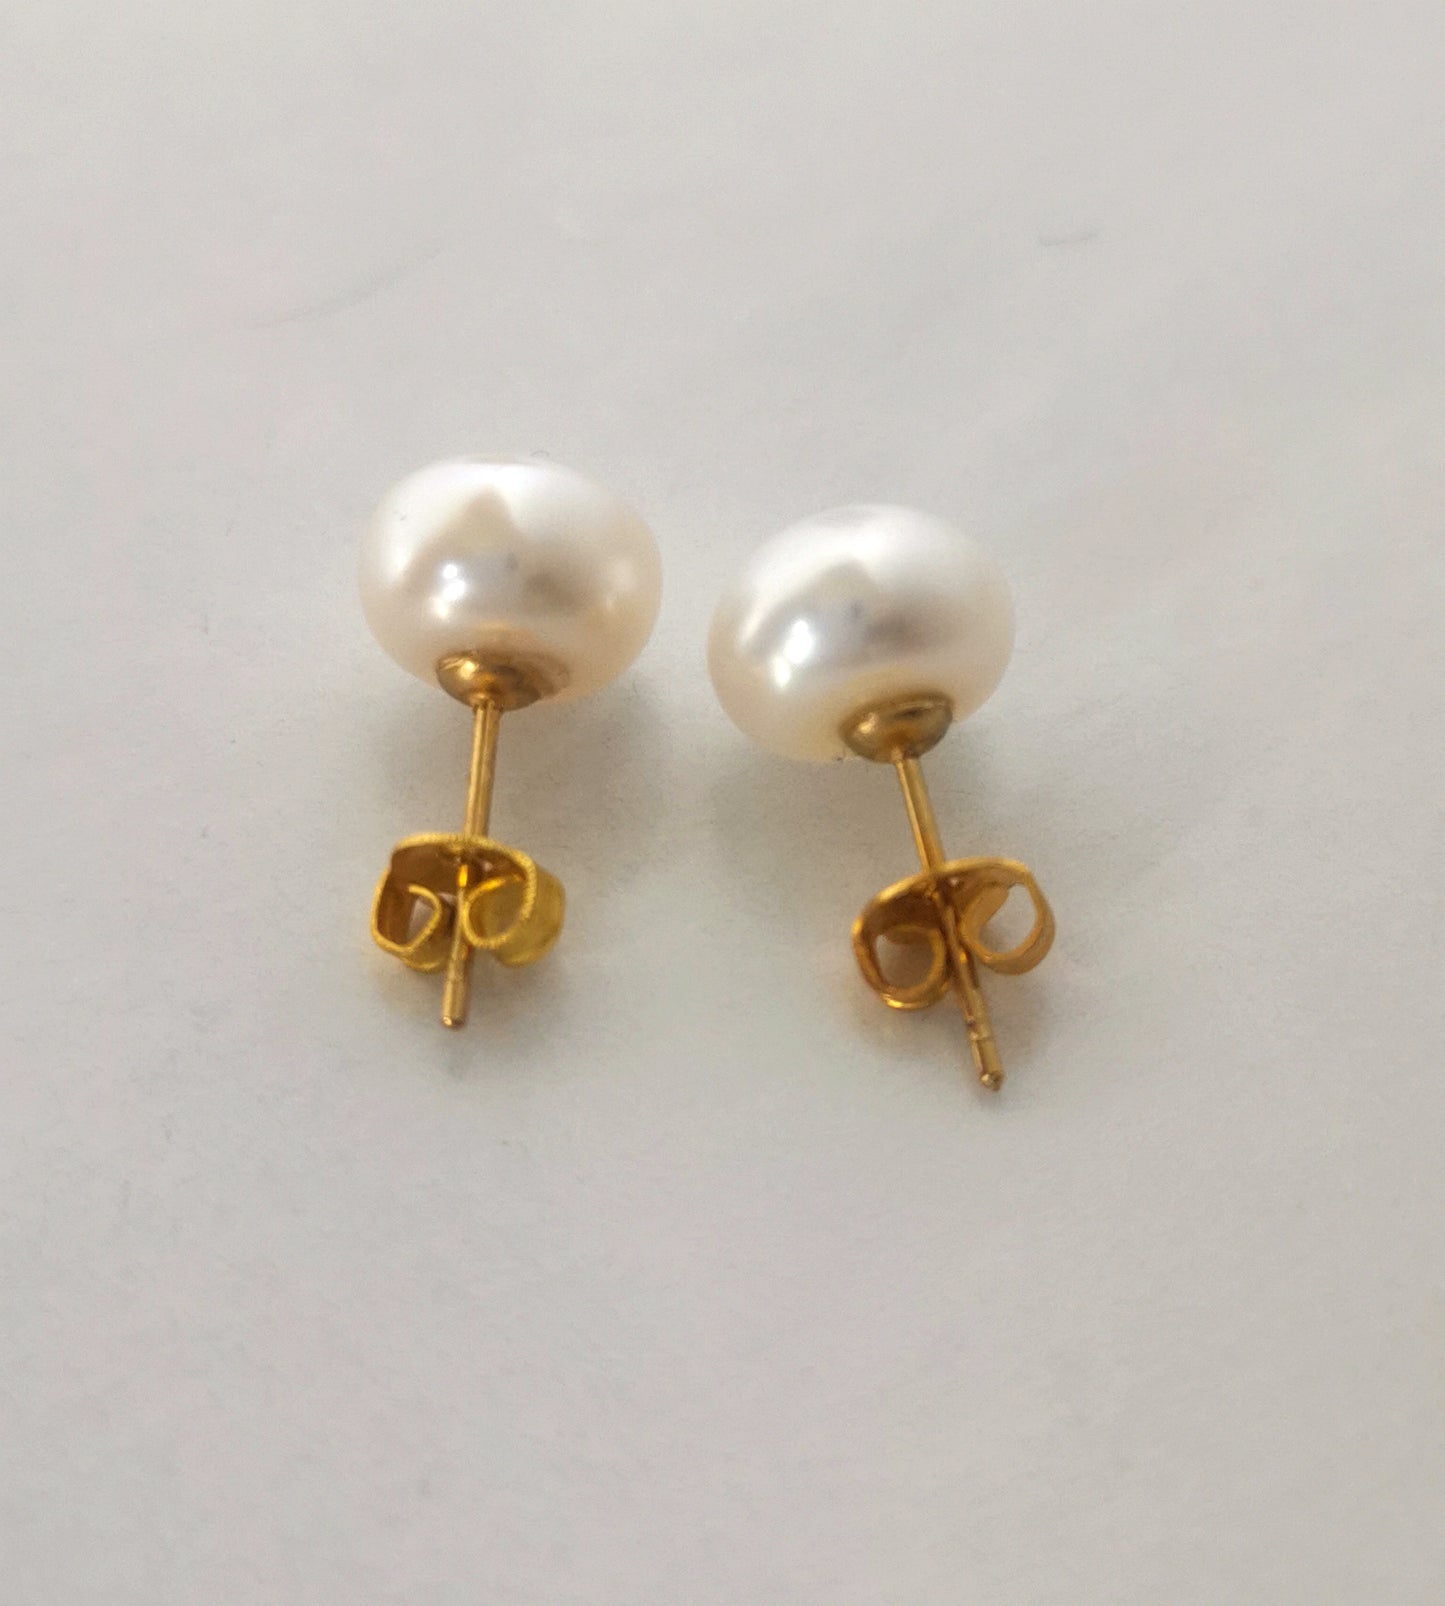 Boucles d'oreilles perles de culture blanches 9mm montées sur clous plaqués or. Présentées cote à cote, perles en haut, posées sur un fond blanc. Vue en très gros plan de dessus.